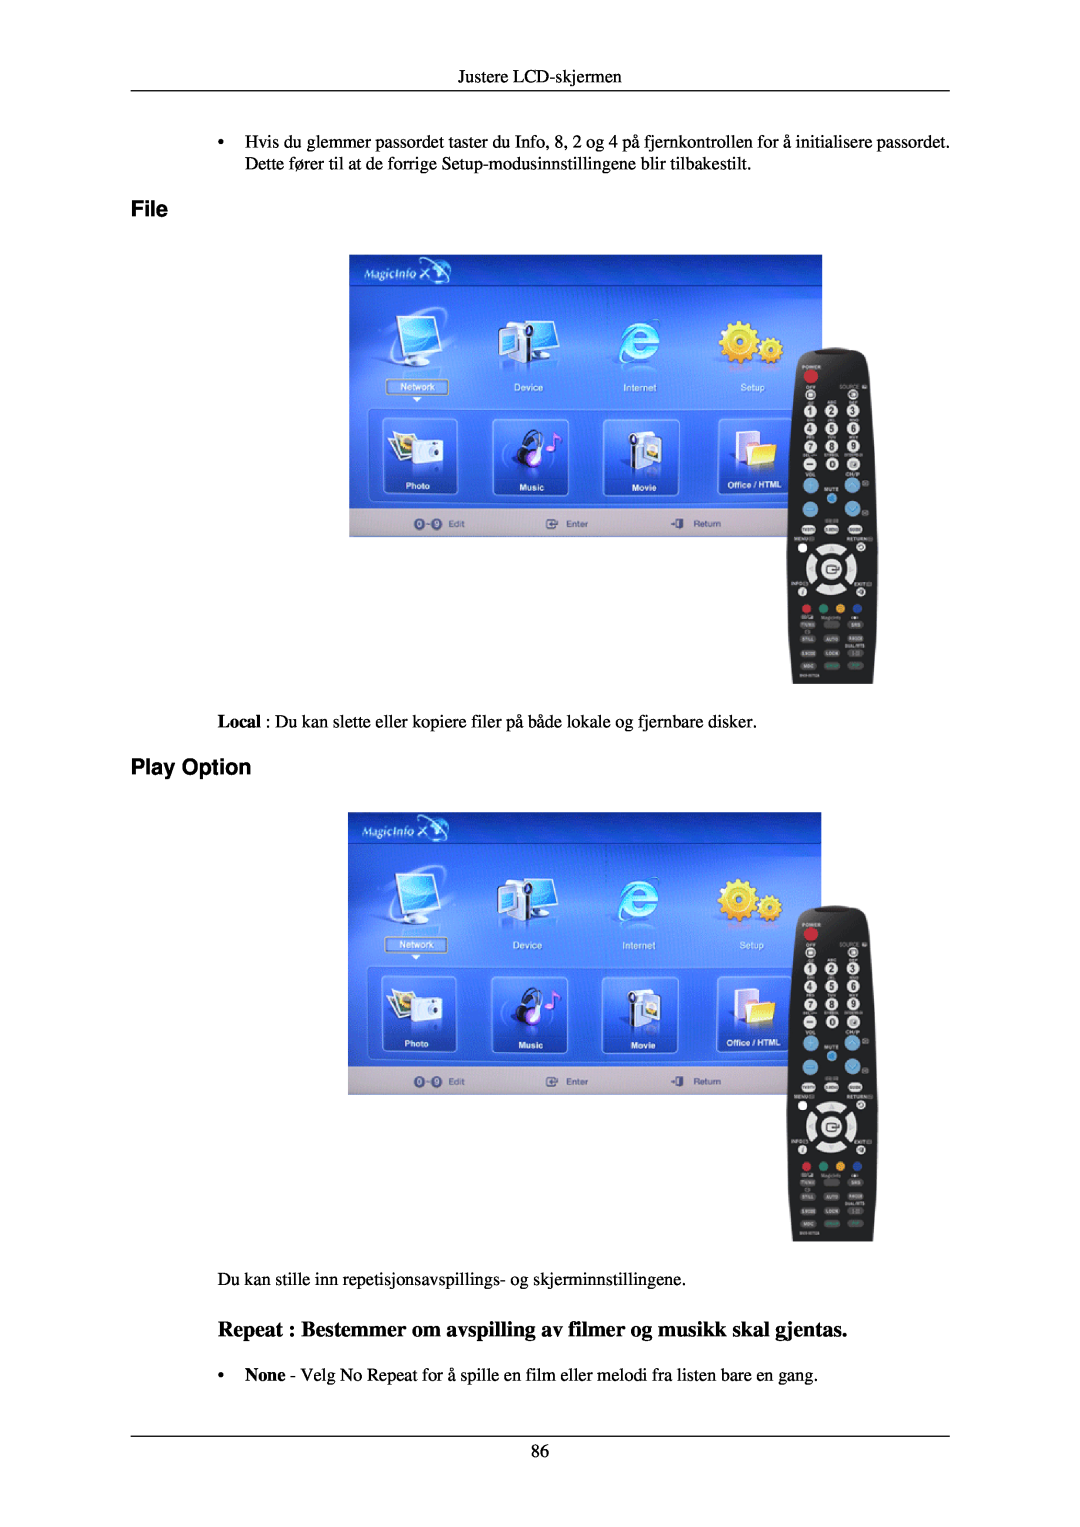 Samsung LH46TCUMBC/EN, LH40TCUMBG/EN File, Play Option, Repeat Bestemmer om avspilling av filmer og musikk skal gjentas 